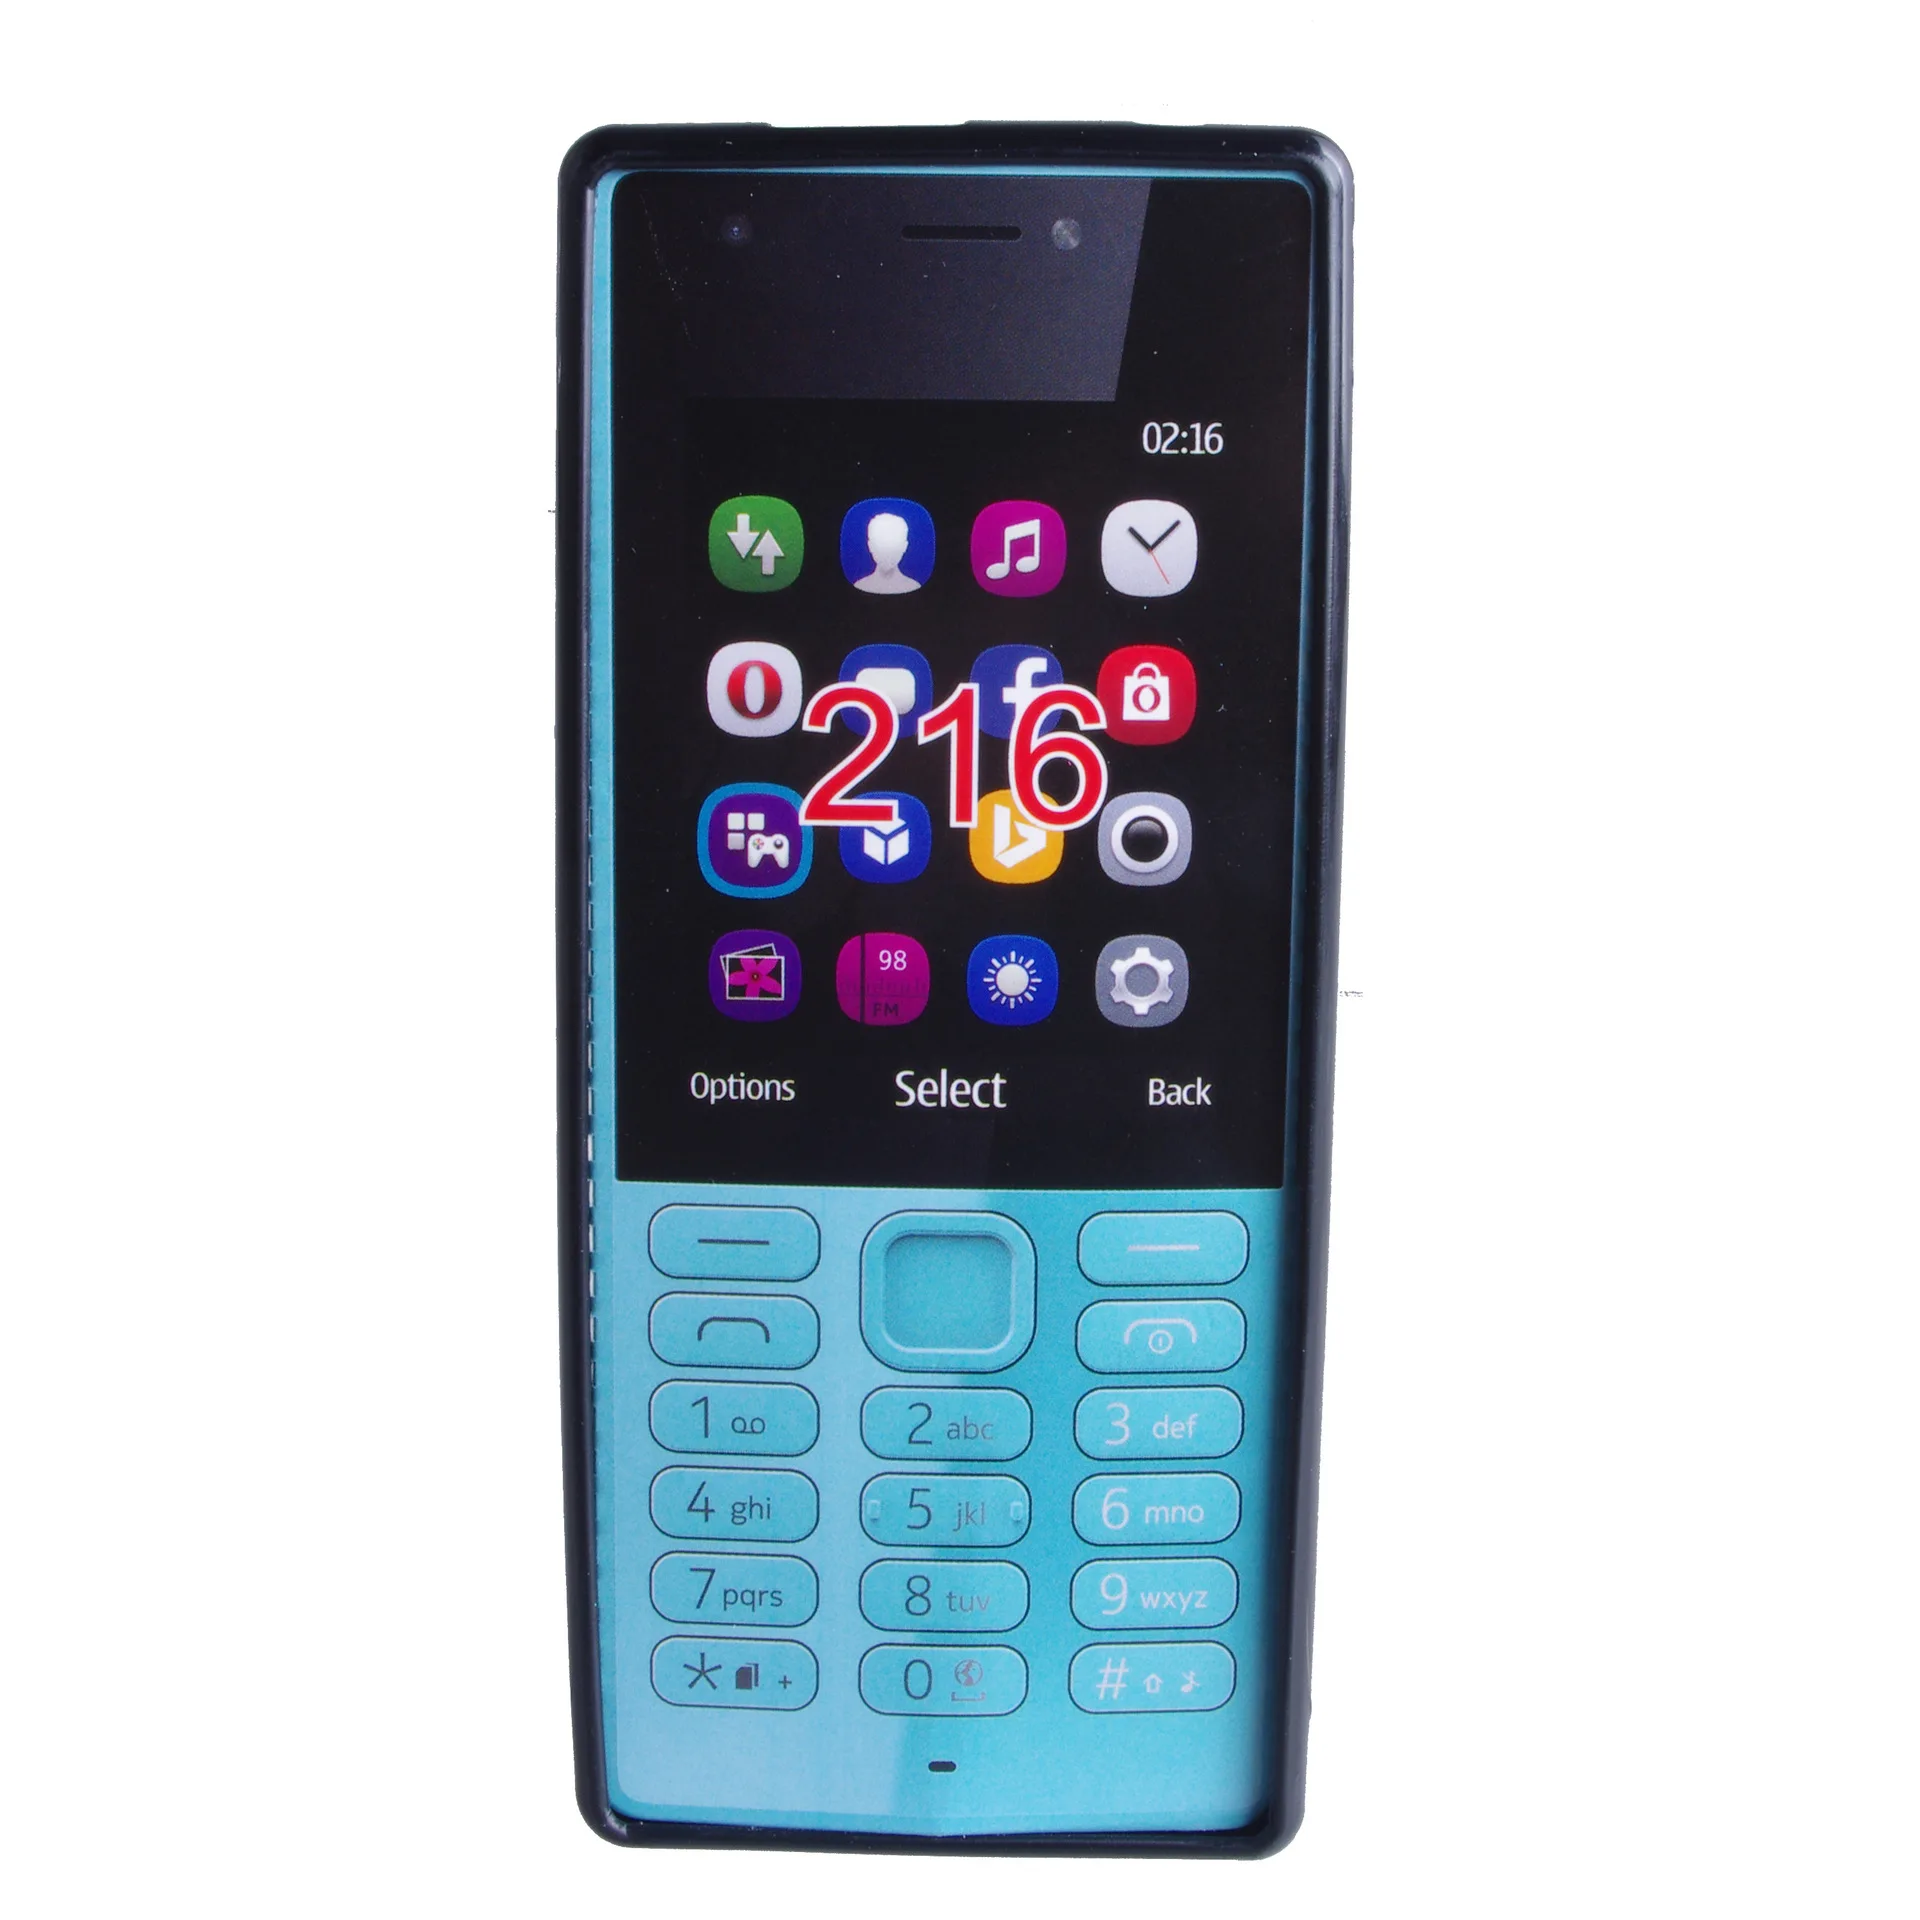 Чехол CASEBODY для Nokia 216 матовый мягкий гелевый из ТПУ 150 чехол Lumia чехлы телефонов